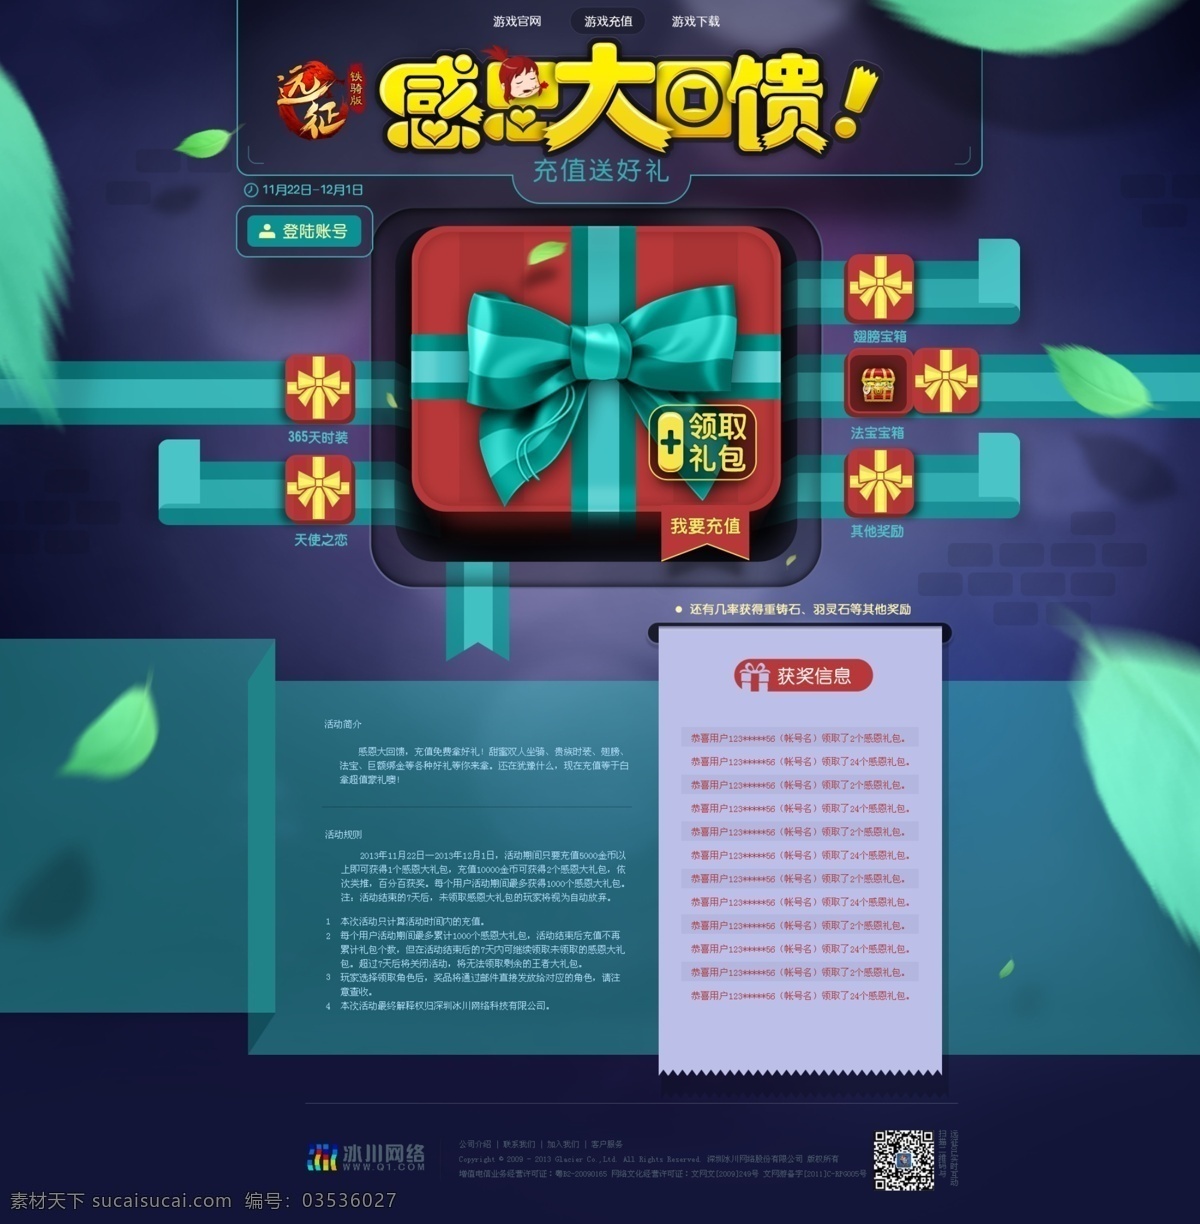 感恩节 红色 黄色 活动 礼包 绿色 网页模板 游戏 远征 专题 模板下载 紫色 设计活动 中文模板 源文件 网页素材